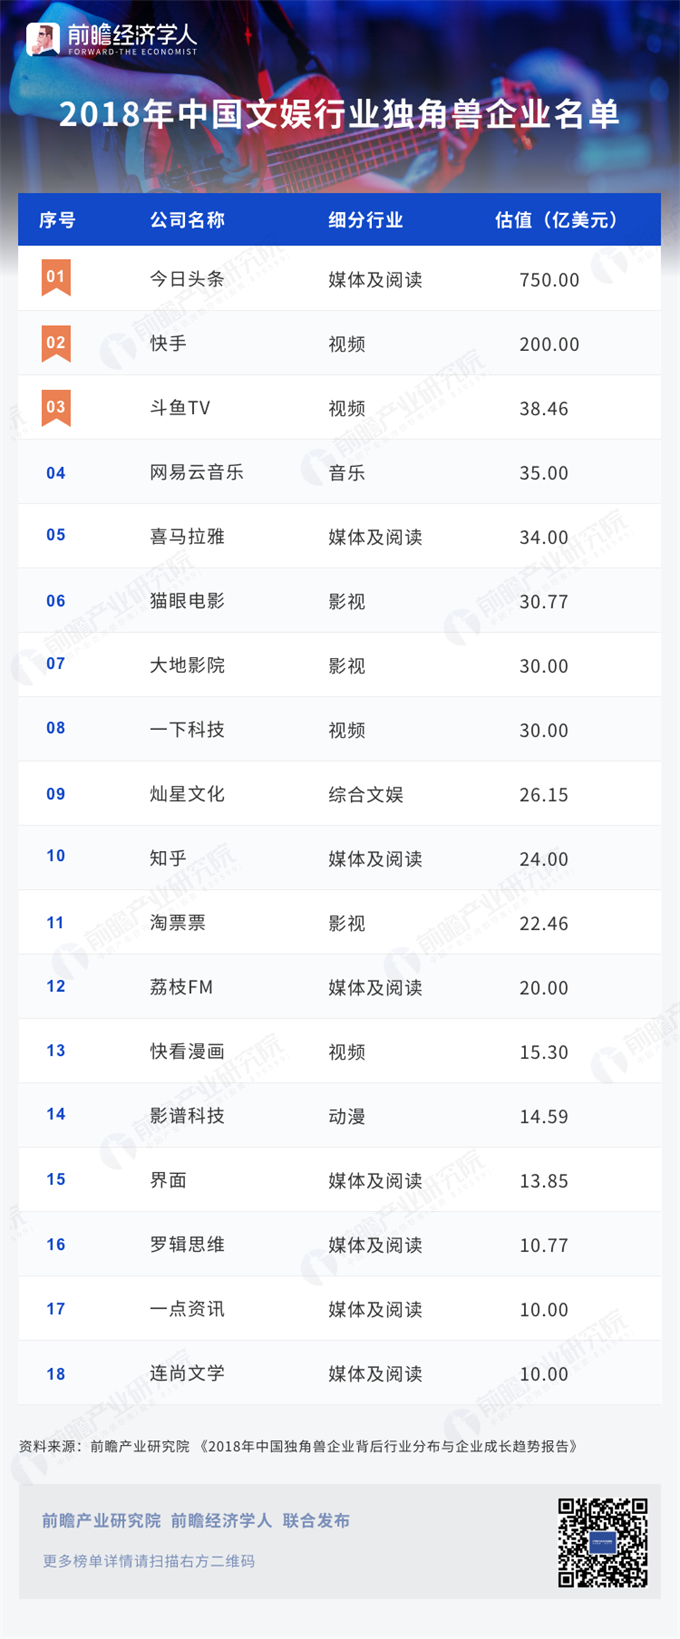 2018中国文娱行业独角兽企业名单